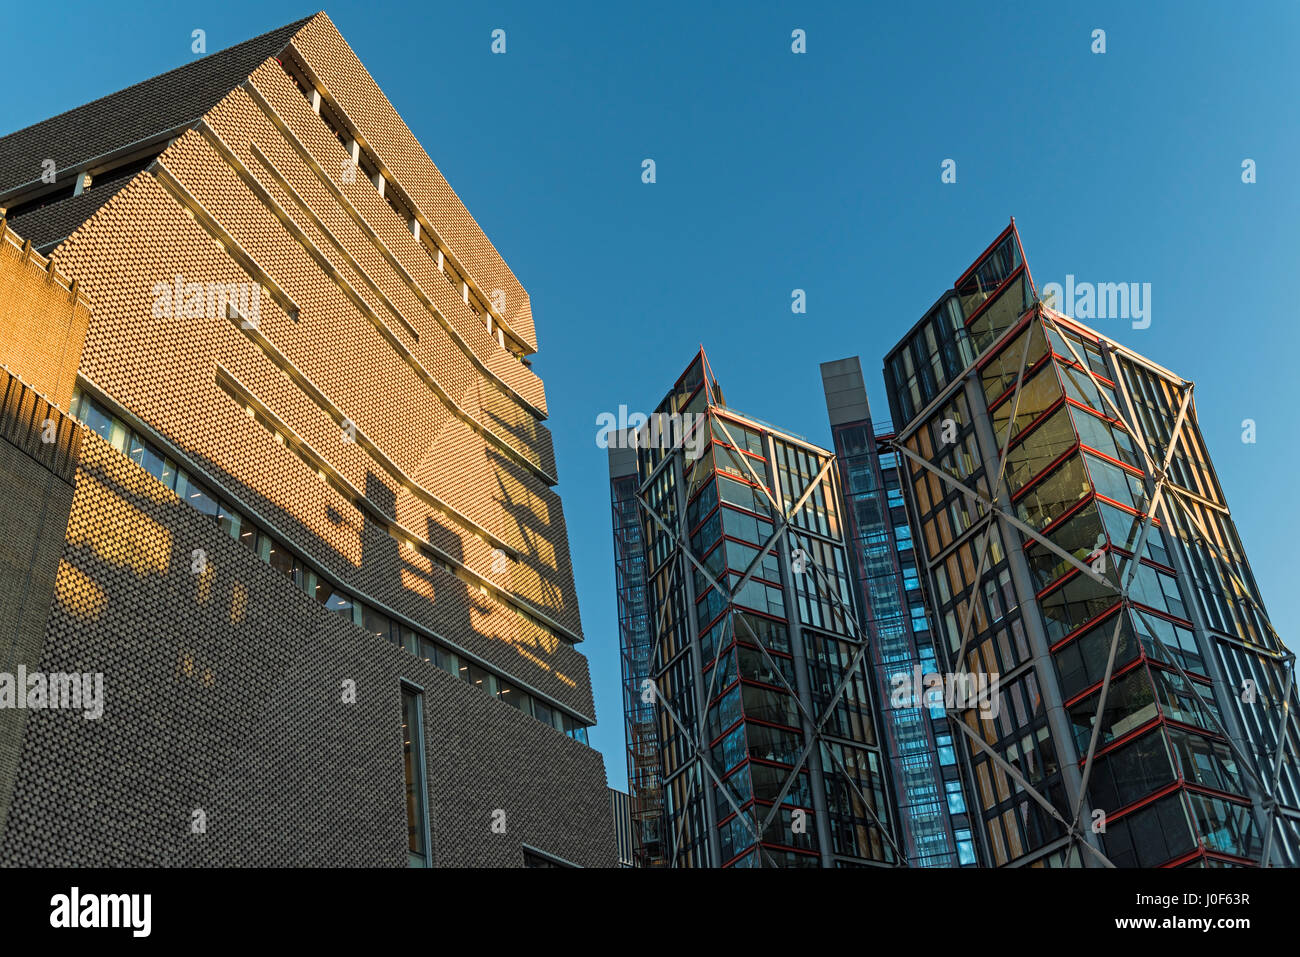 L'extension de la Tate Modern et Neo Bankside Apartments Southbank London UK Banque D'Images